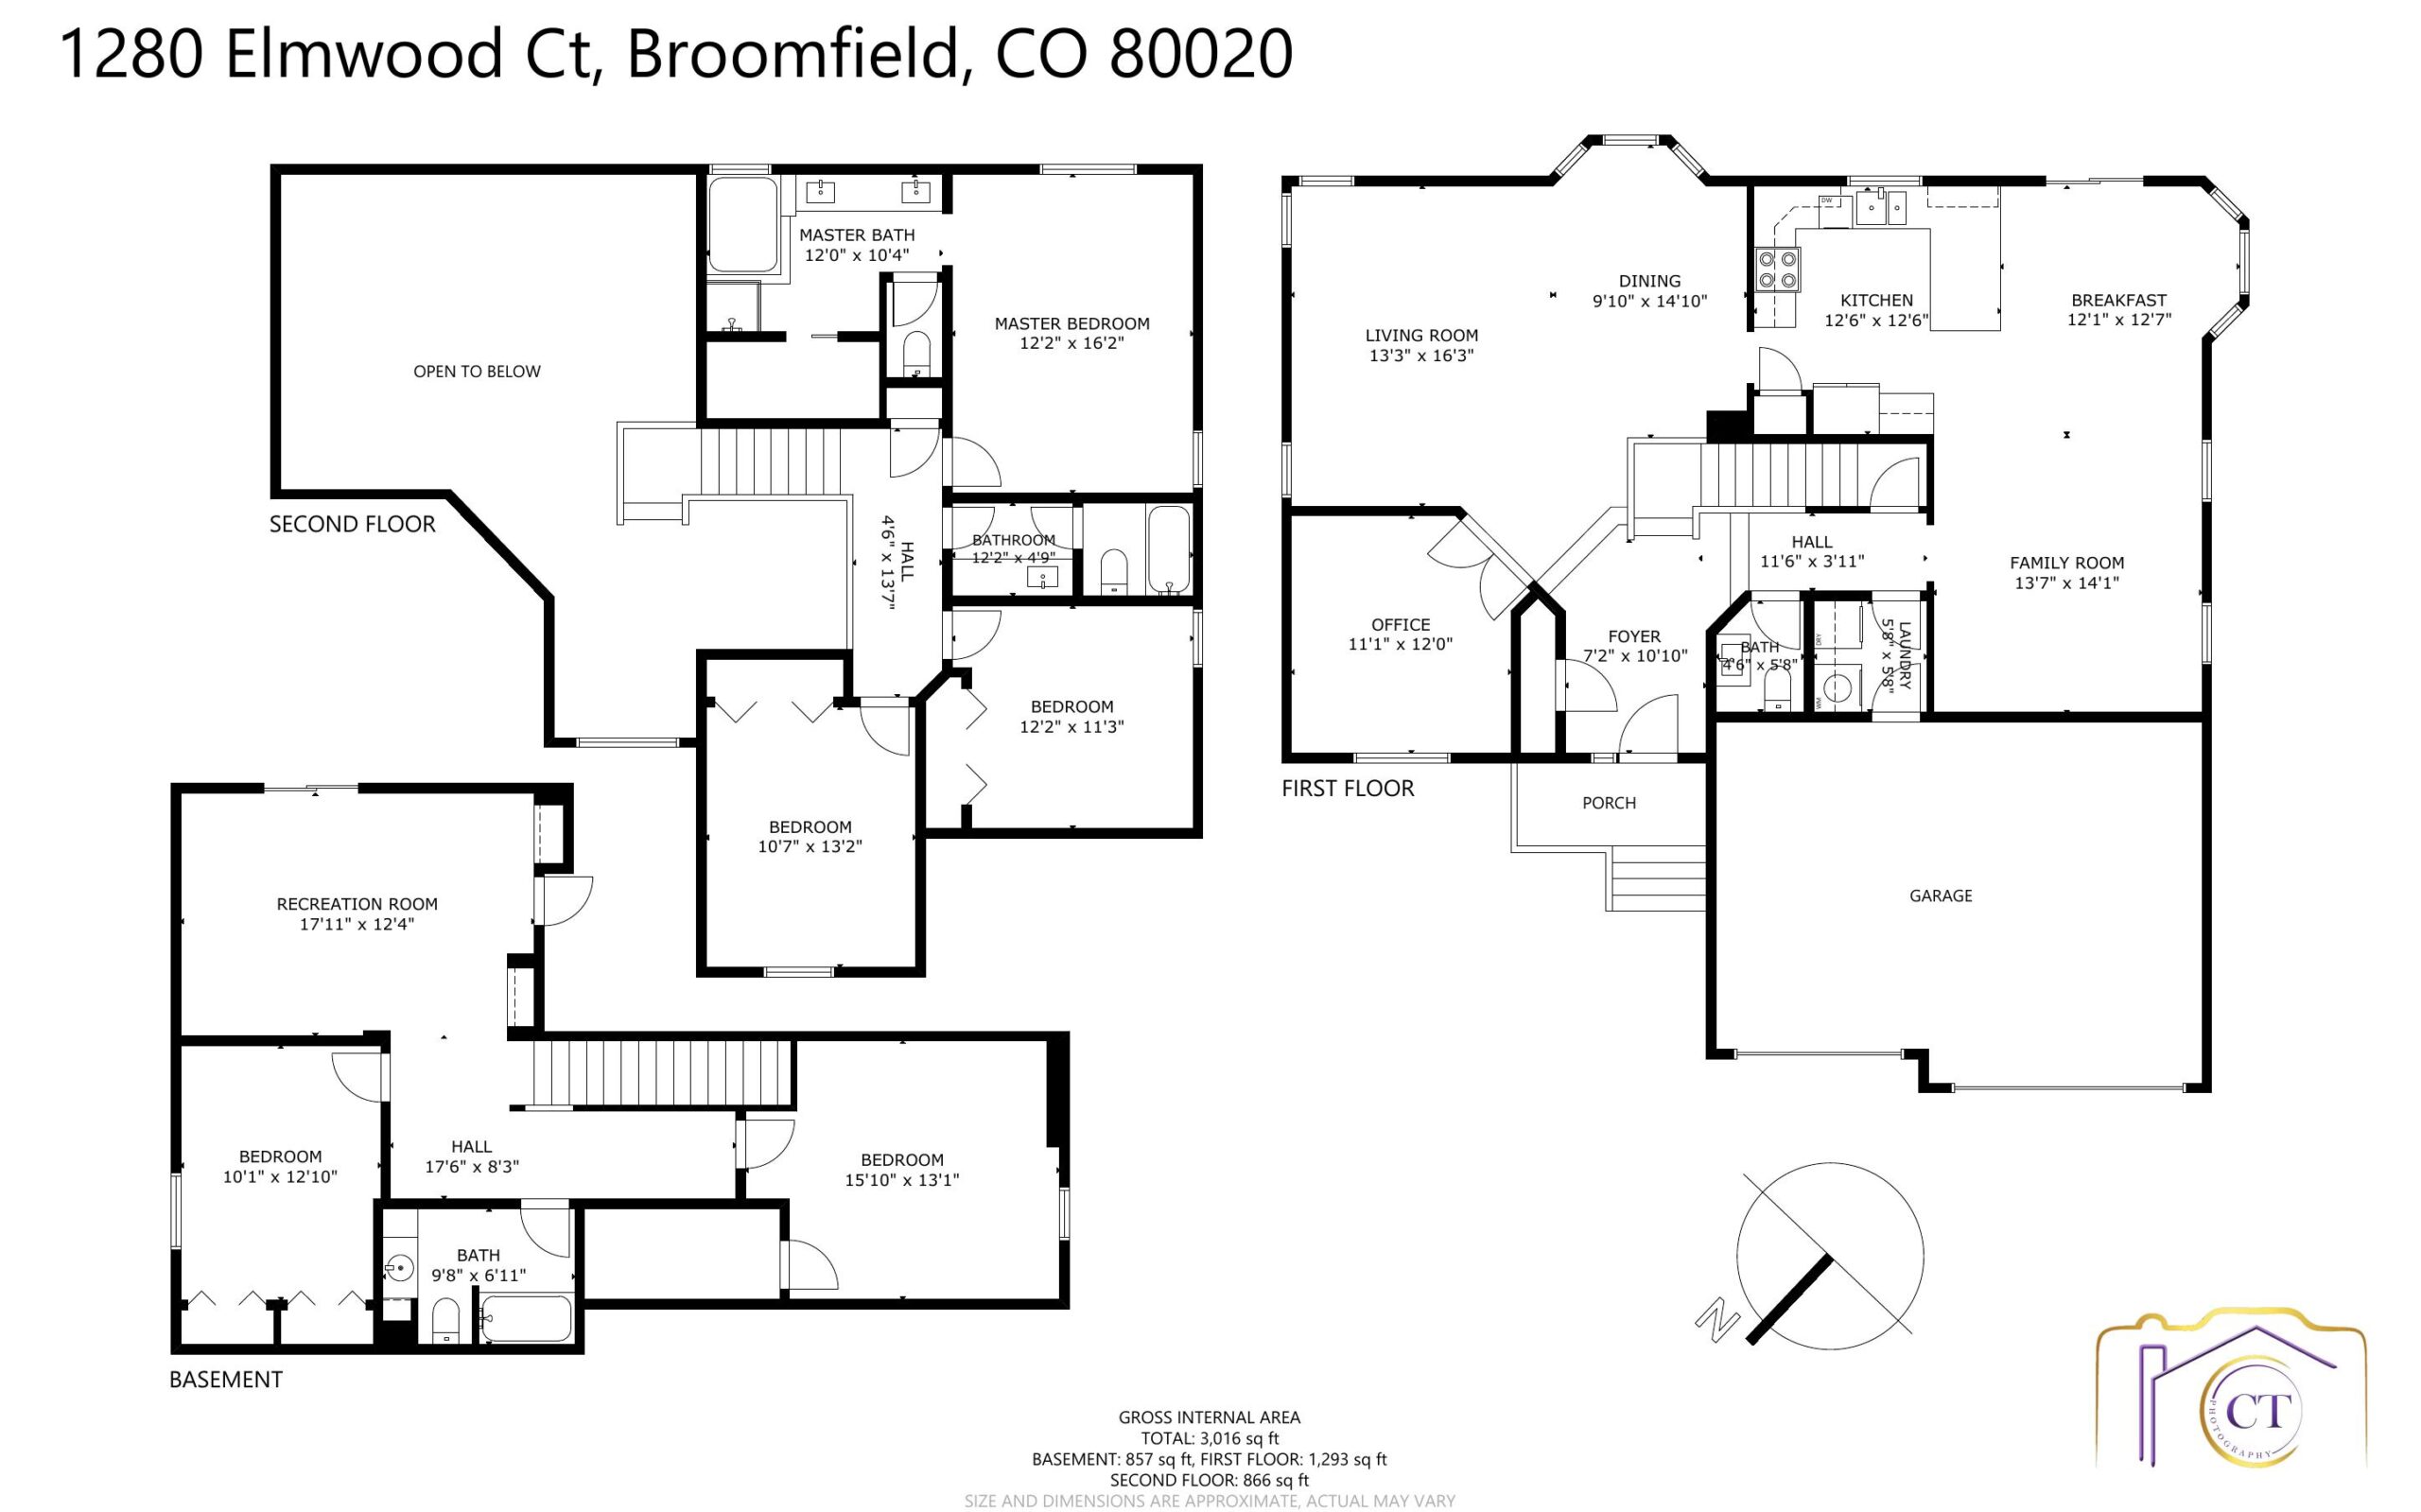 REAL ESTATE LISTING: 1280 Elmwood Ct Broomfield Floor Plans